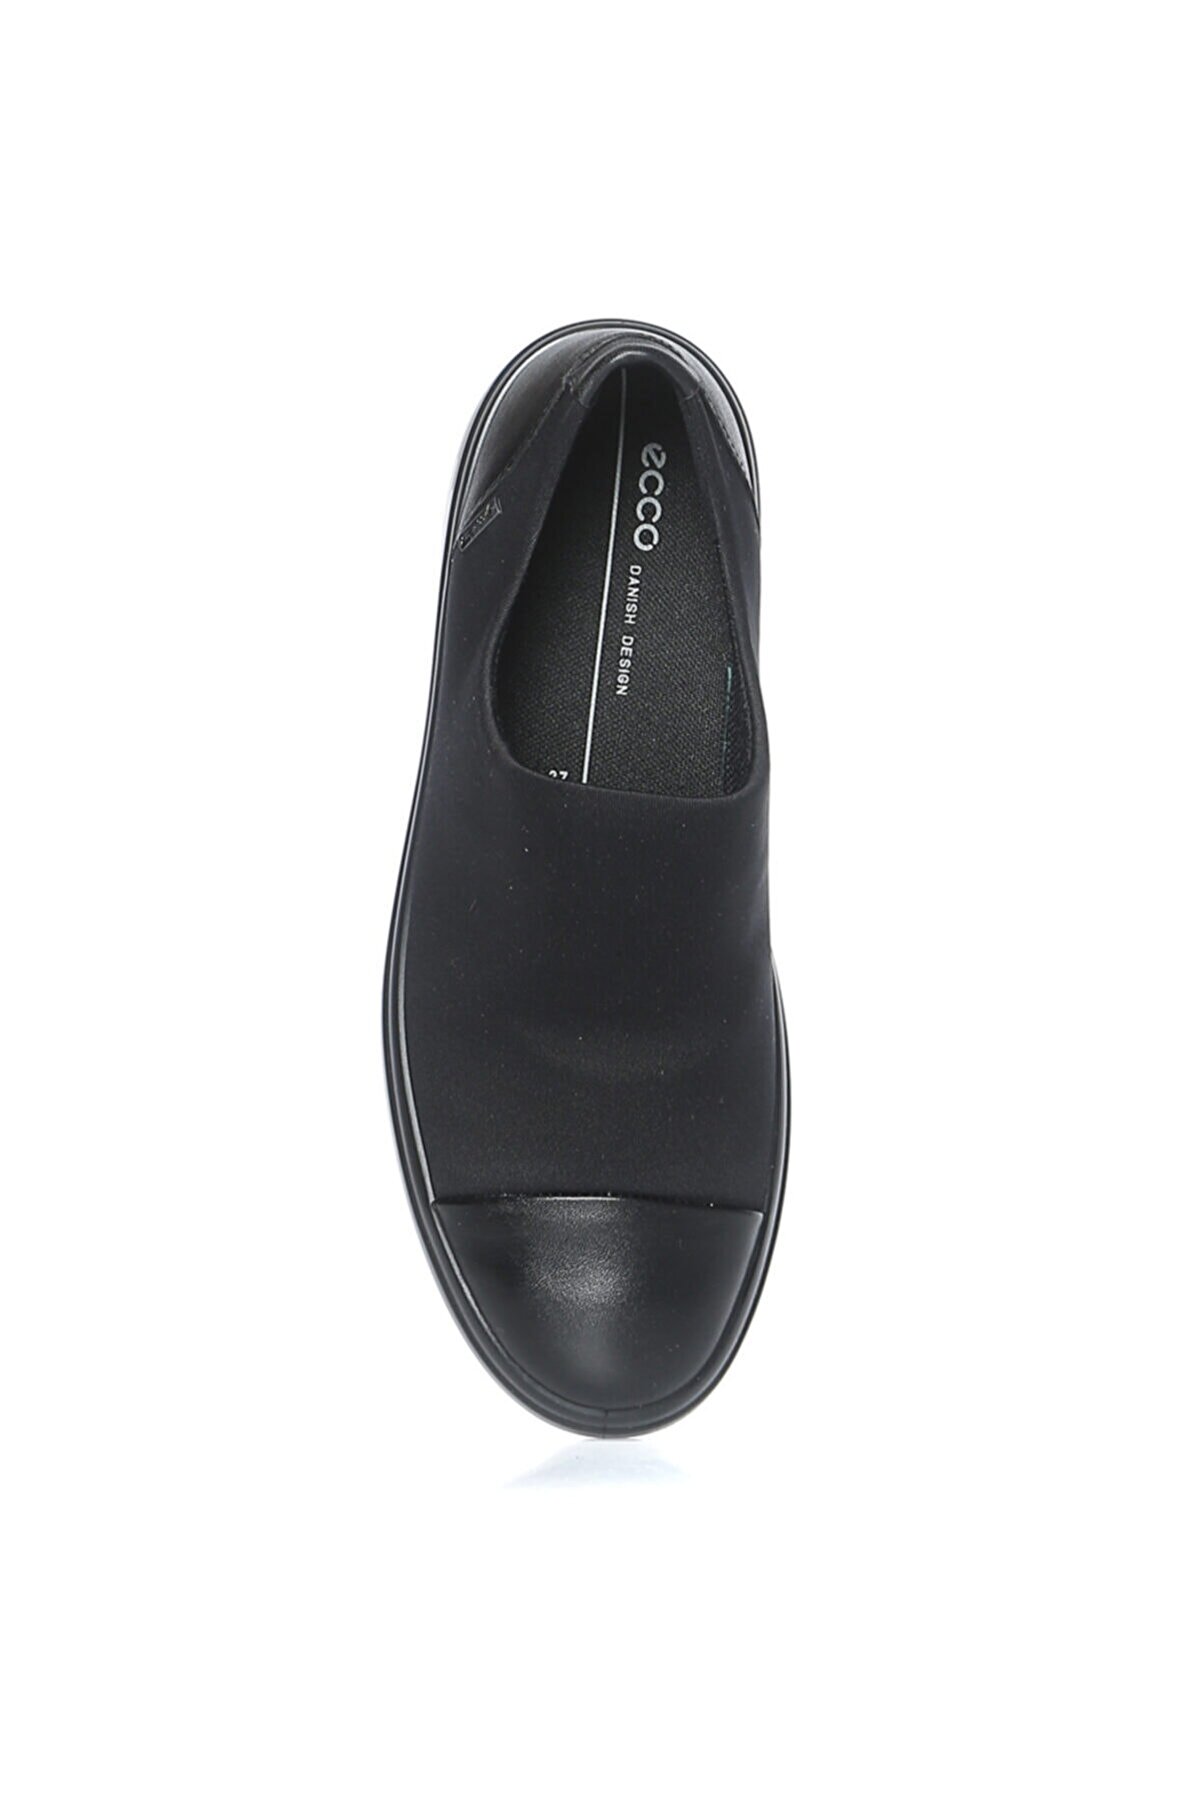 Ecco Soft 7 Wedge W Black/black Siyah Kadın Düz Ayakkabı